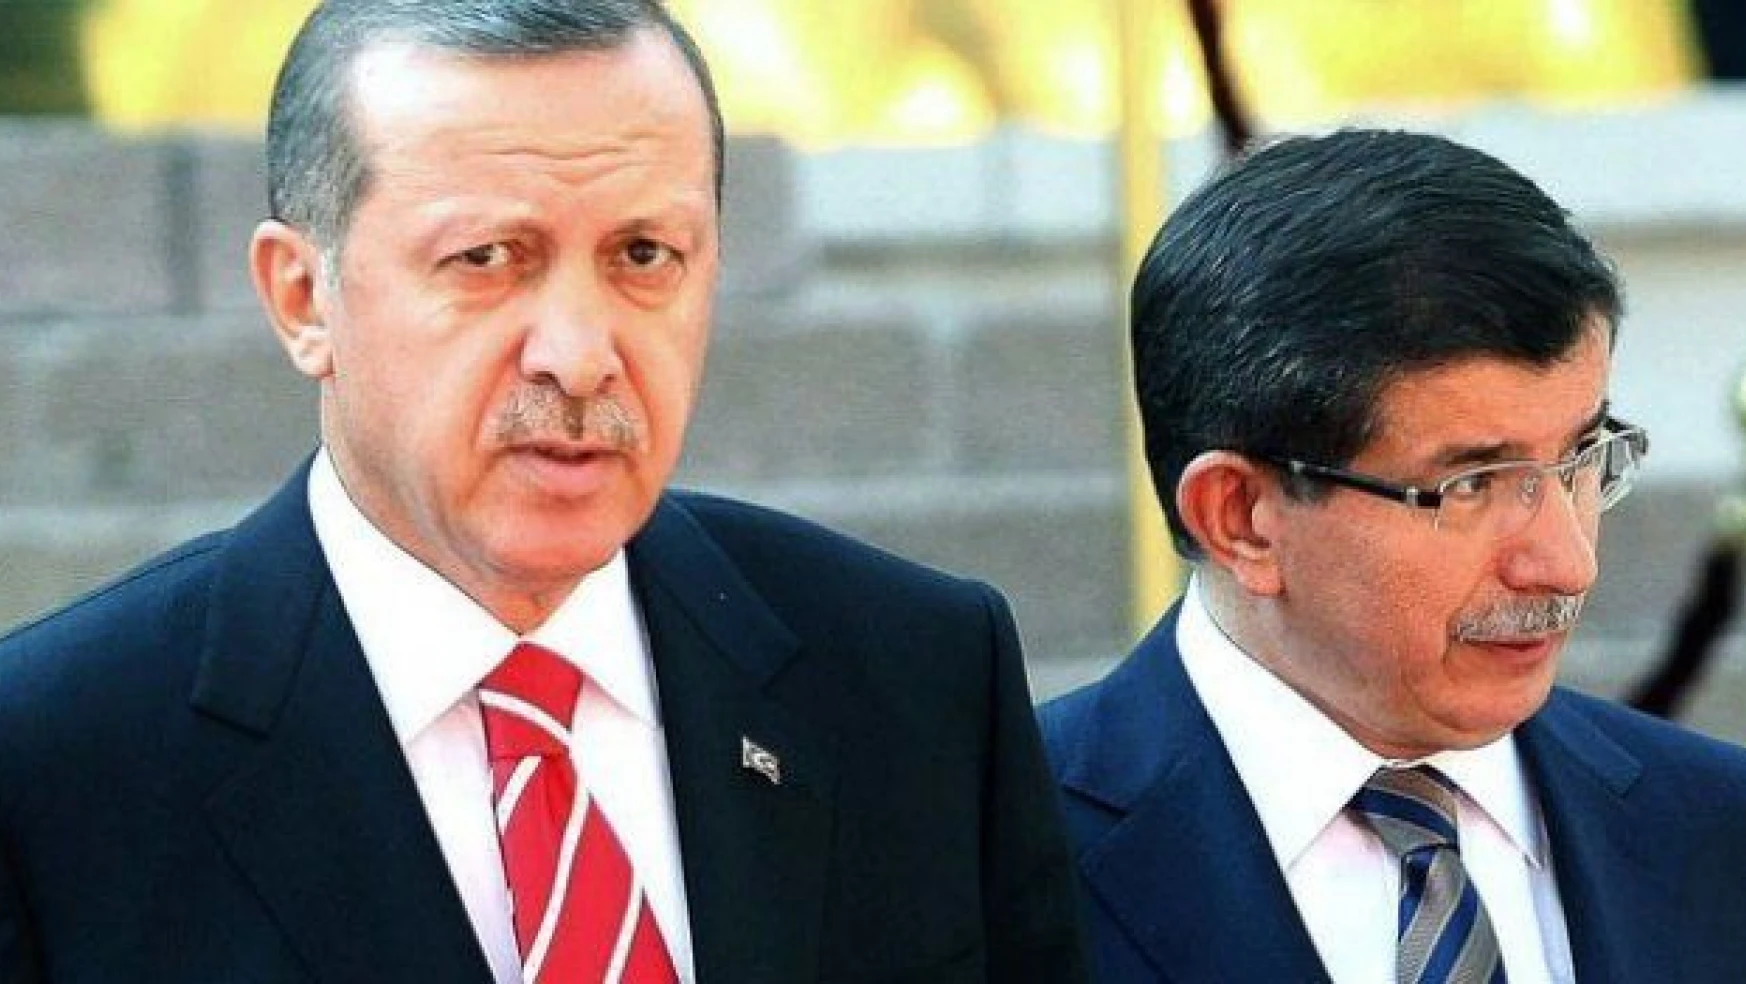 Tüm gözler saat 18:00'deki Erdoğan-Davutoğlu görüşmesinde!